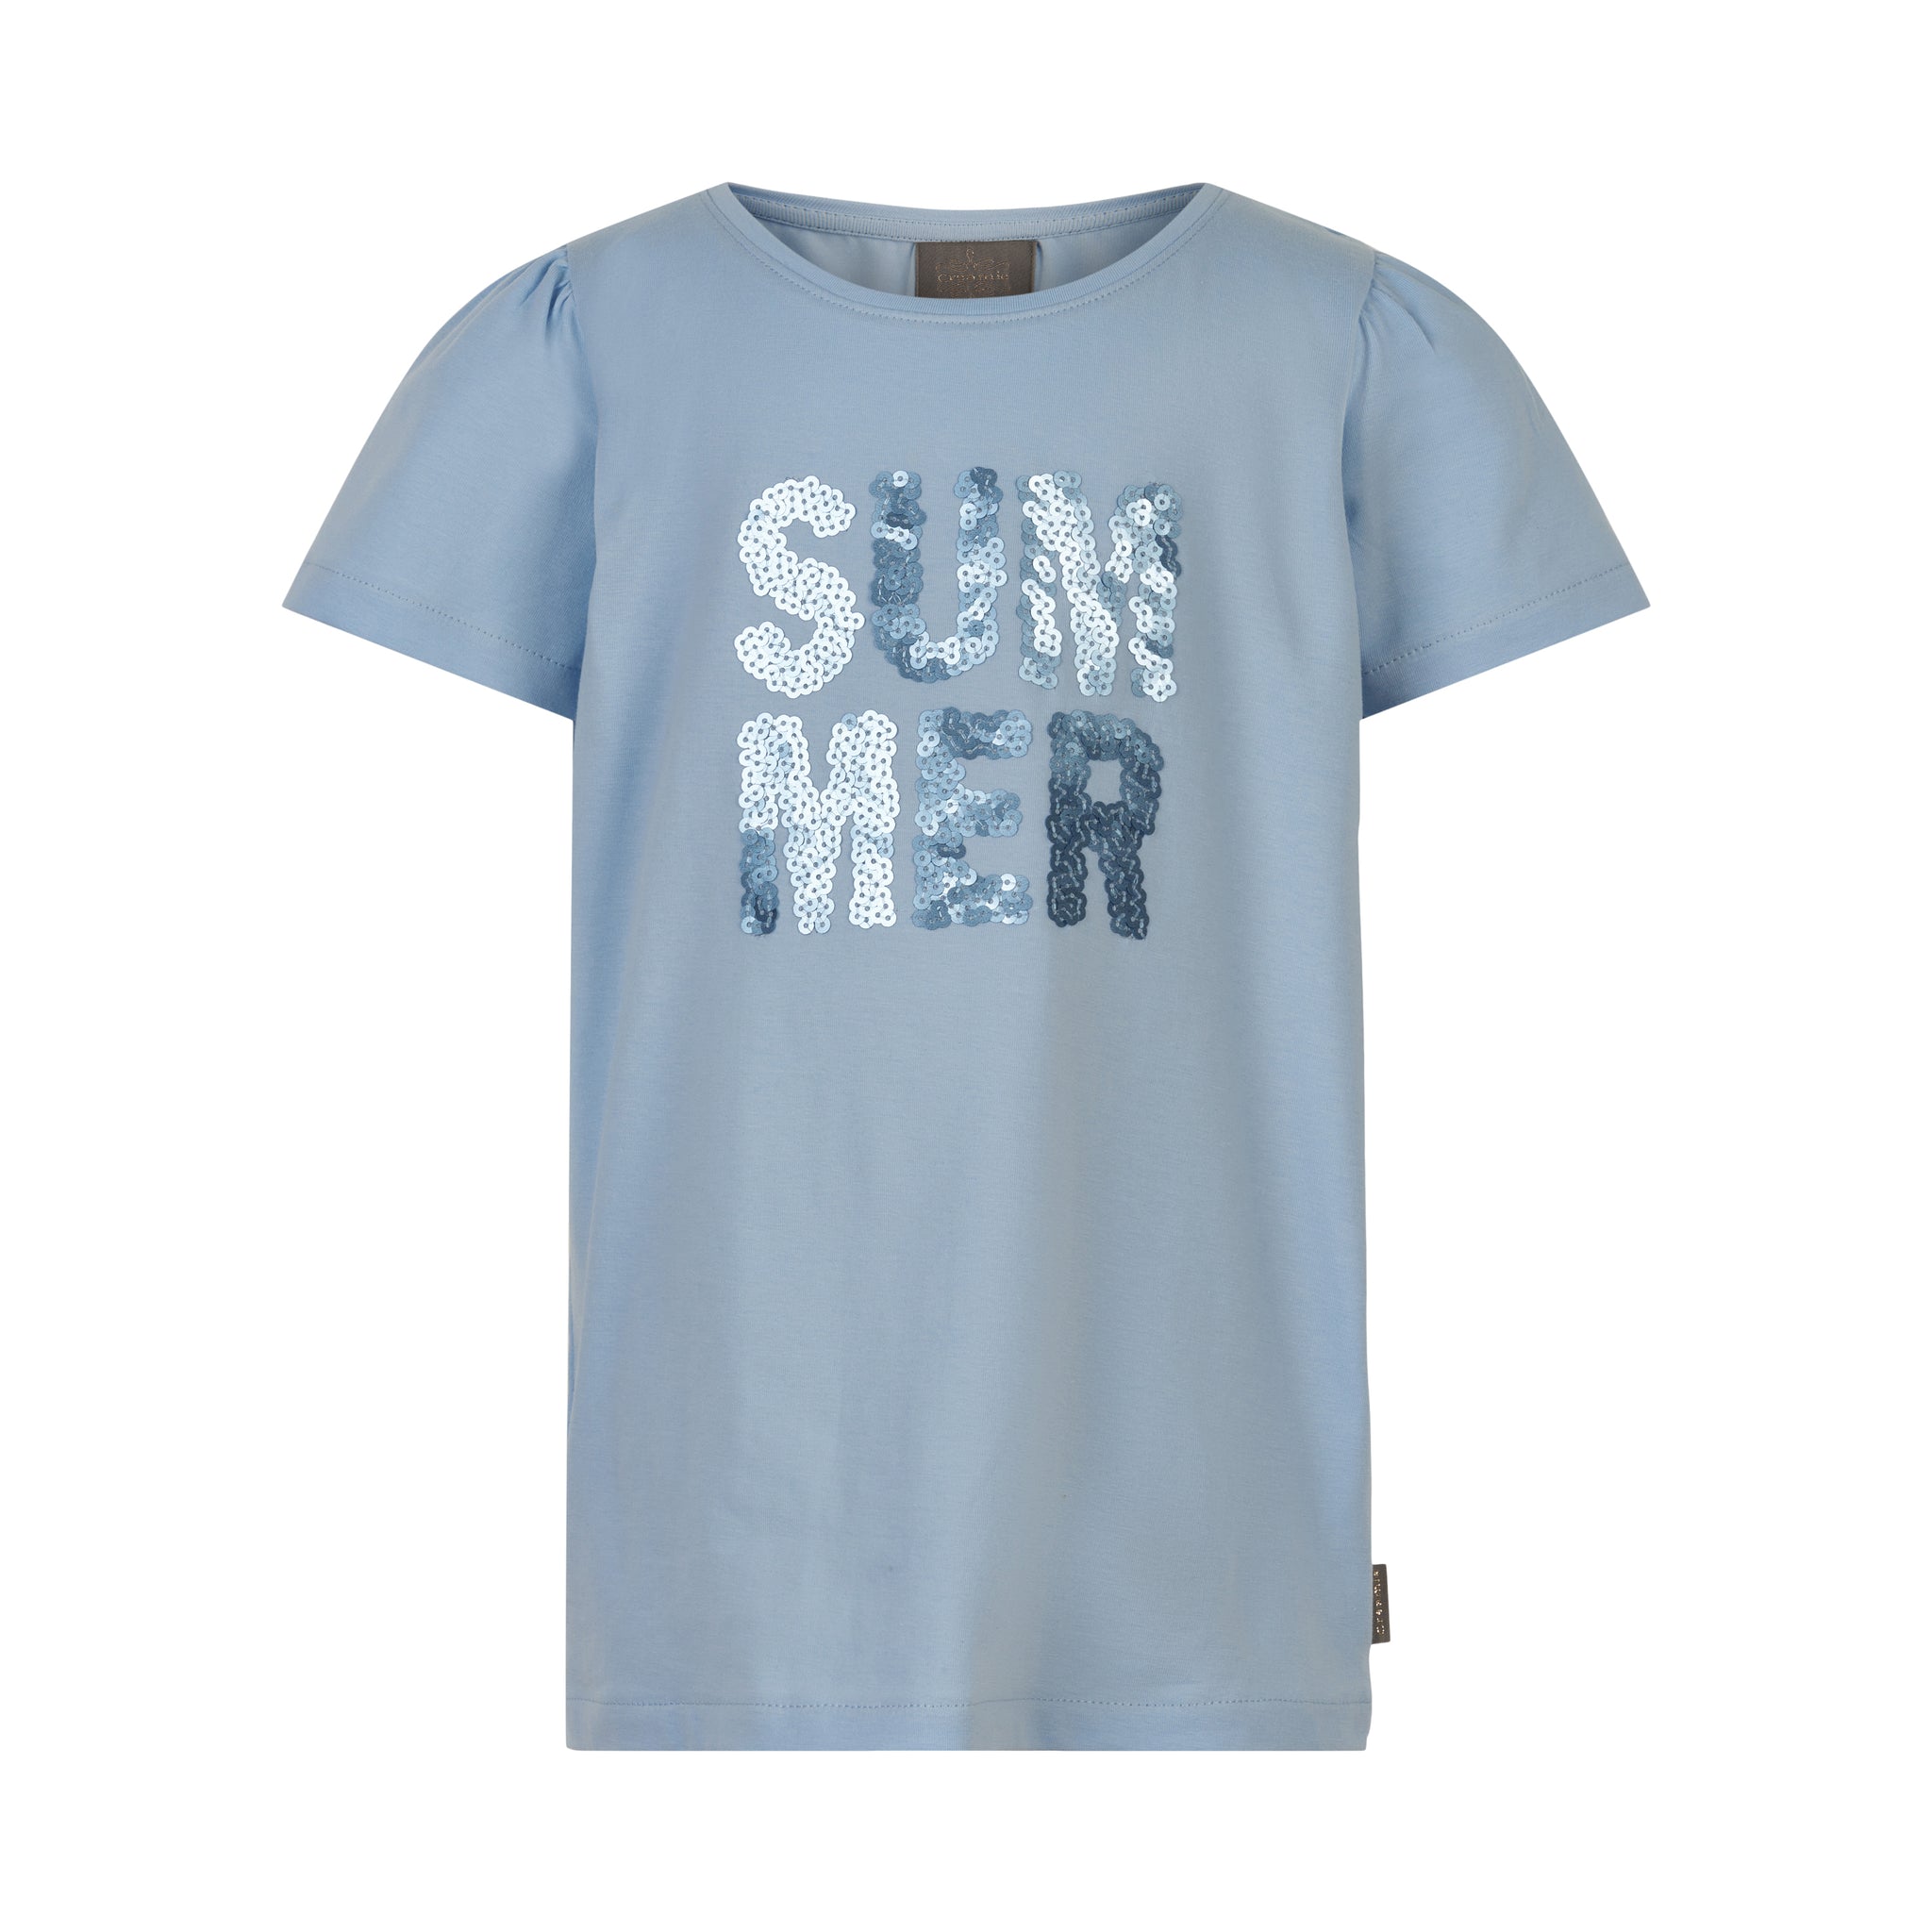 Creamie - T-shirt SS Summer (821943) - Xenon Blue